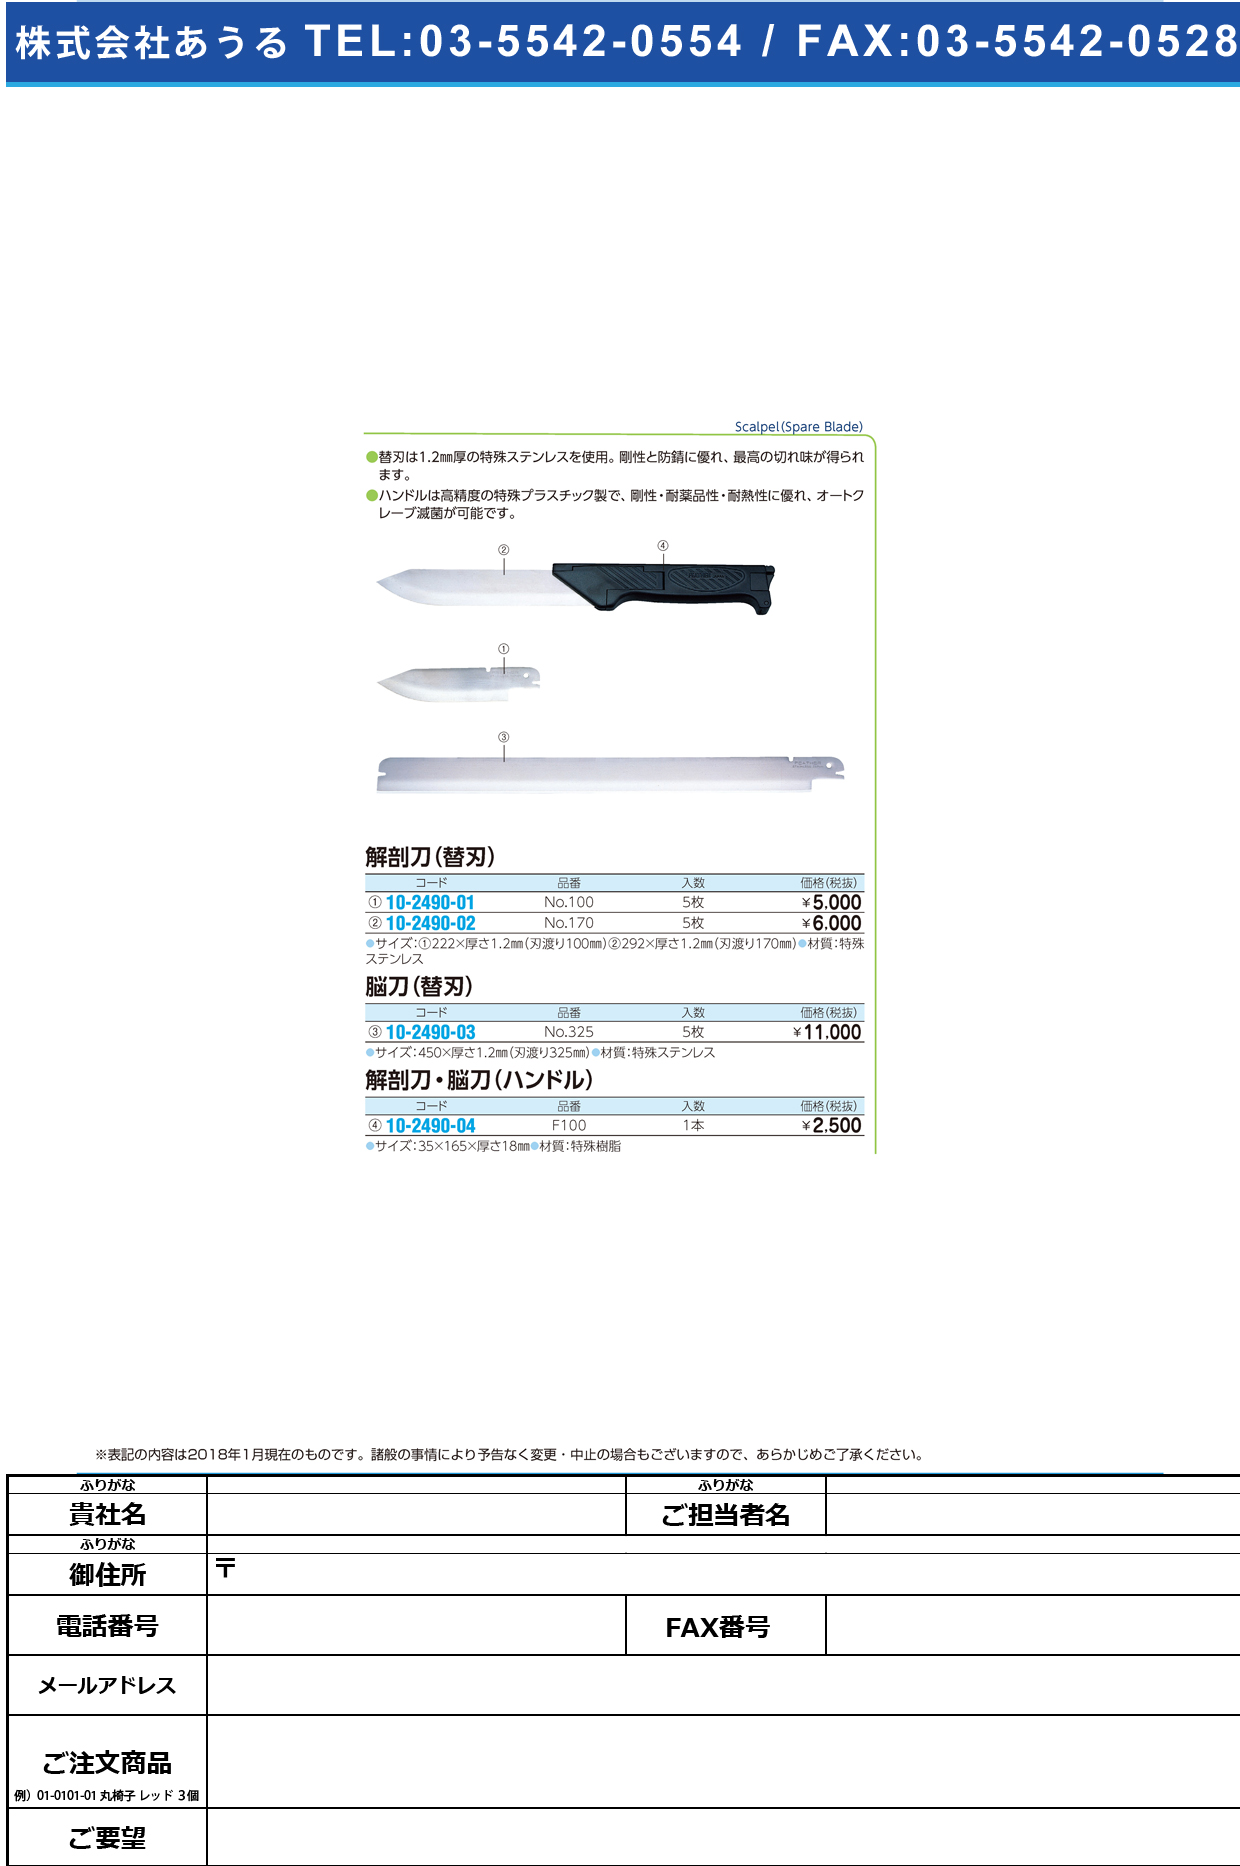 (10-2490-04)フェザー解剖刀・脳刀ハンドル F100 ﾌｪｻﾞｰｶｲﾎﾞｳﾄｳﾊﾝﾄﾞﾙ【1本単位】【2018年カタログ商品】